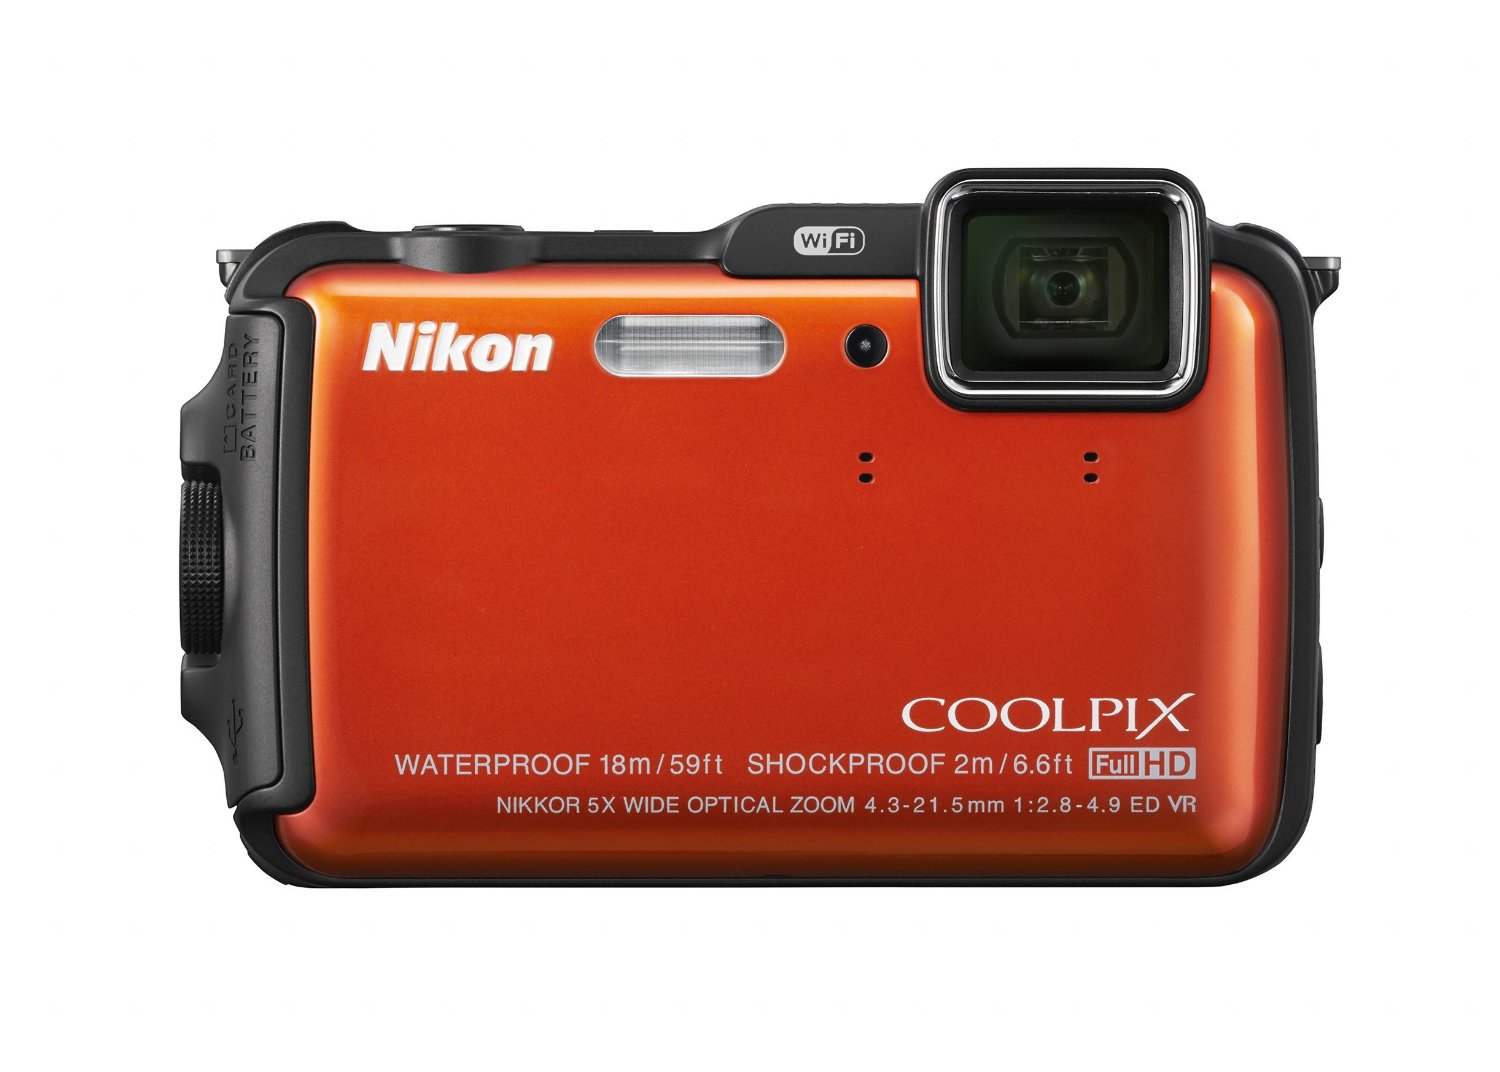 Nikon Coolpix aw120 16,0 megapíxeles cámara Impermeable (naranja)